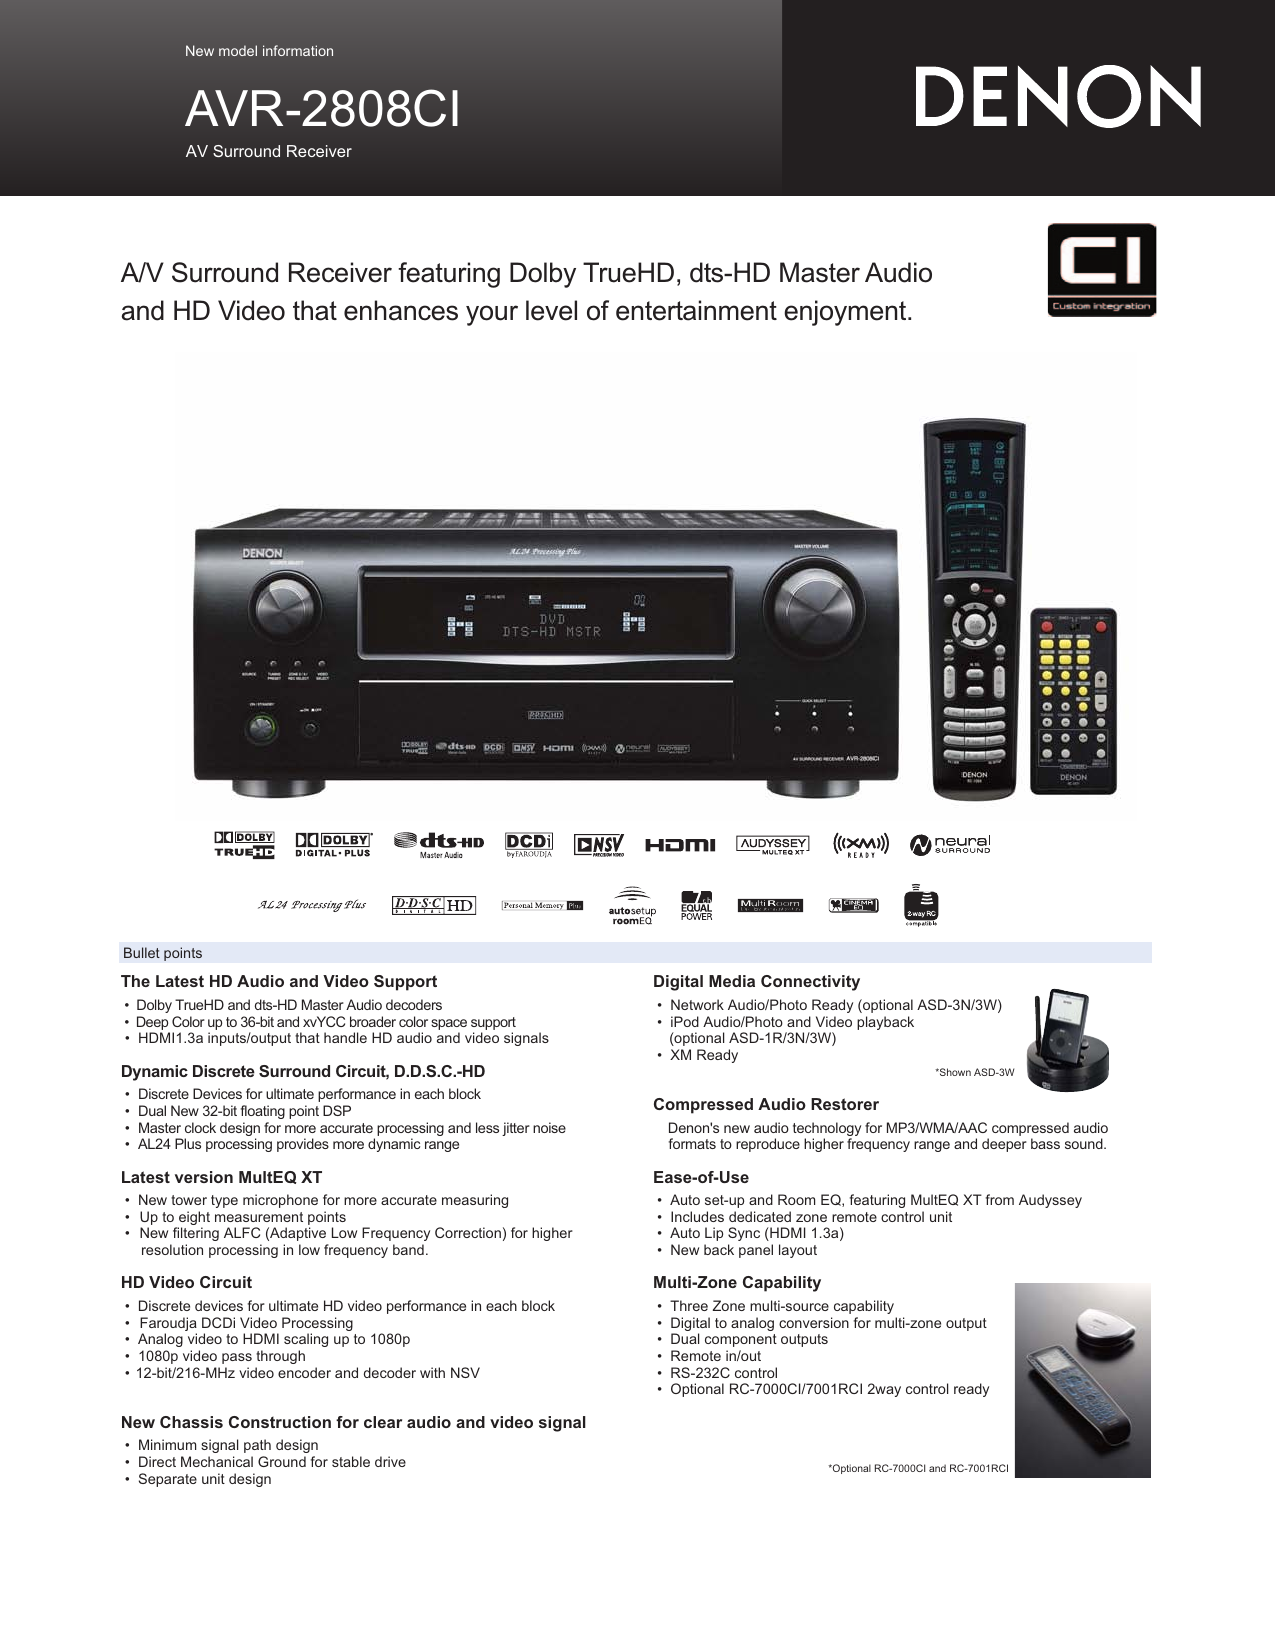 Denon AVR-988 AL24 Processing Plus AV Surround Receiver with HDMI and